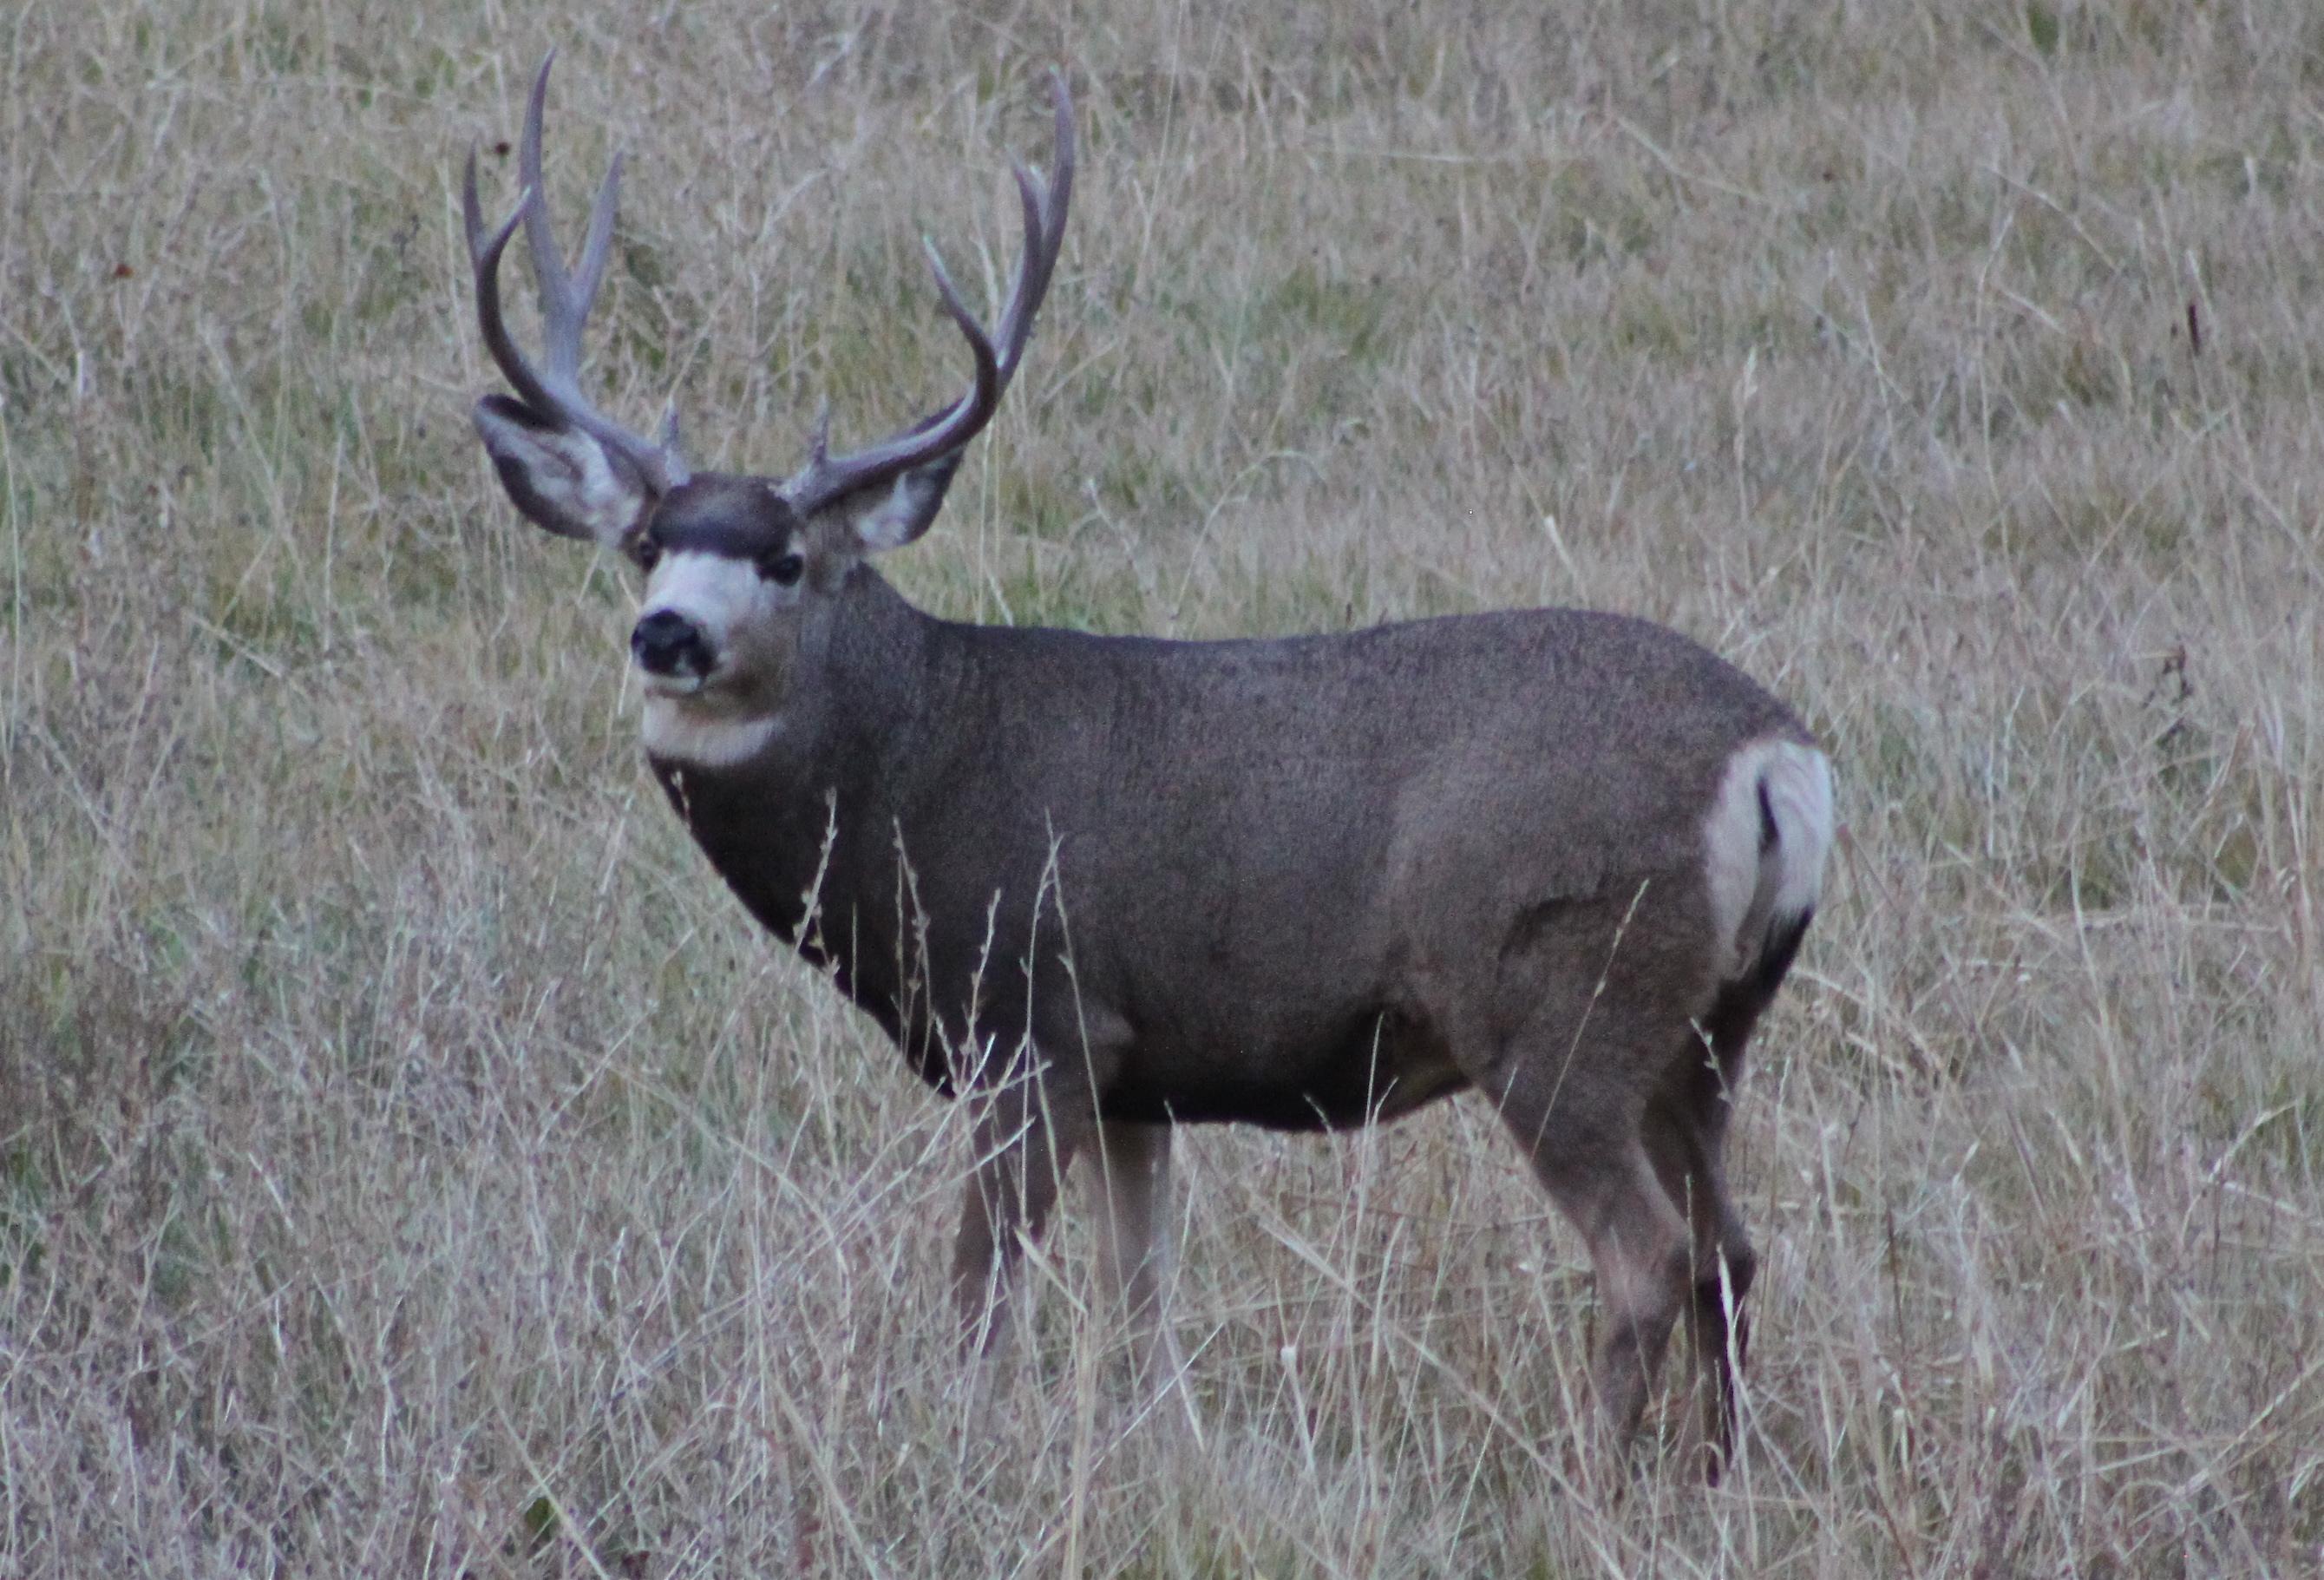 Mule deer buck : Photos, Diagrams & Topos : SummitPost